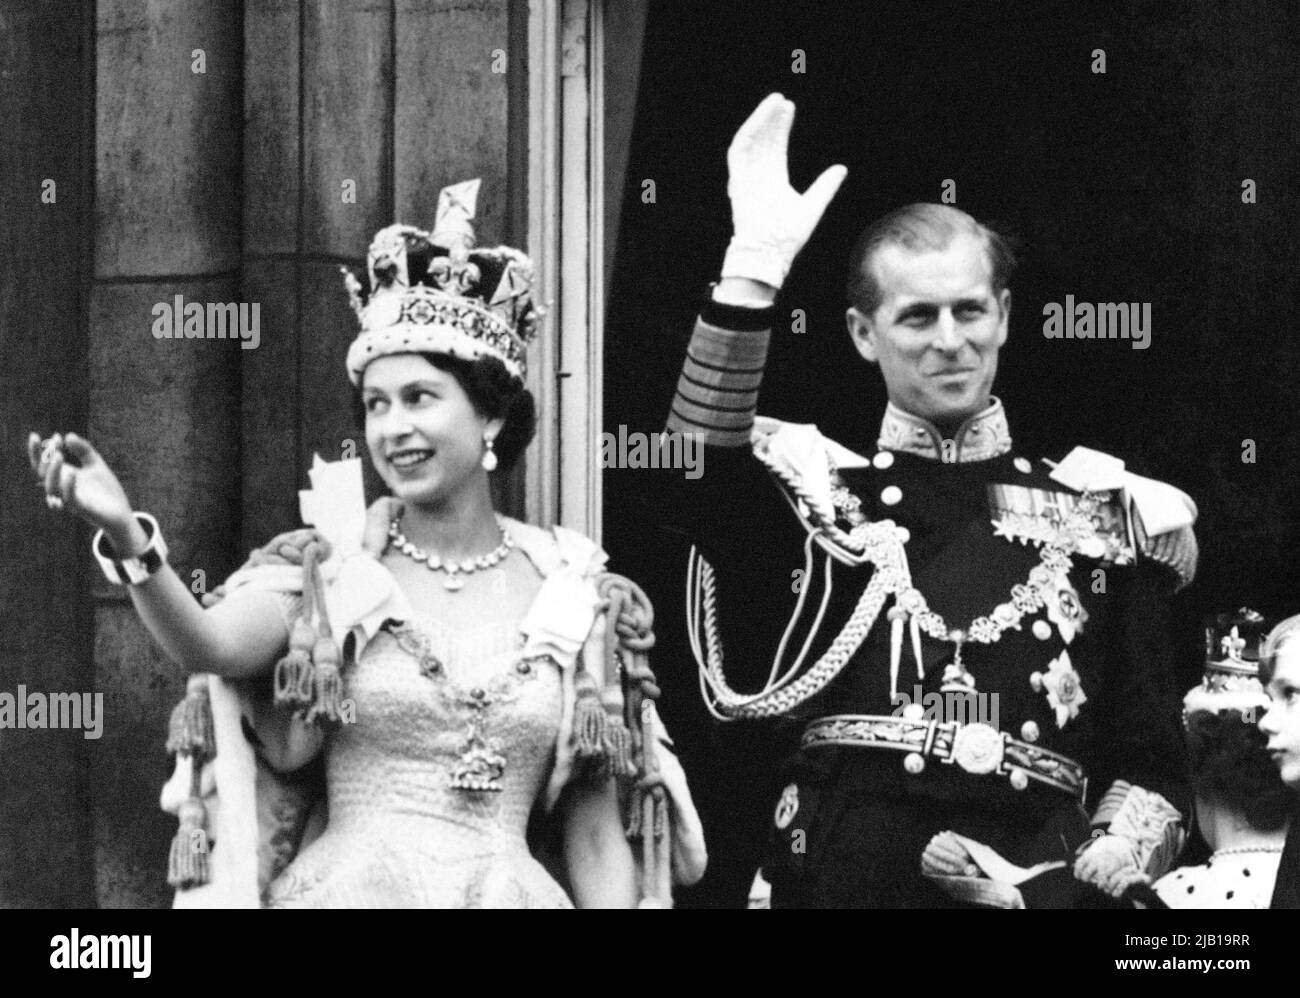 Datei-Foto vom 2/6/1953 von Königin Elizabeth II, die die Imperial State Crown trägt, und dem Herzog von Edinburgh, gekleidet in Uniform des Admirals der Flotte, winken vom Balkon zu den schauenden Massen vor den Toren des Buckingham Palace nach der Krönung. Der Beginn der Jubilee-Feierlichkeiten der Königin fällt auf einen bedeutenden Jahrestag für den Monarchen - ihren Krönungstag. Vor neunundsechzig Jahren wurde Elizabeth II. Bei einer religiösen Zeremonie gekrönt, die am 2 1953. Juni in der historischen Umgebung der Westminster Abbey stattfand und mit Straßenfesten im ganzen Land gefeiert wurde. Ausgabedatum: Donnerstag, 2. Juni 202 Stockfoto